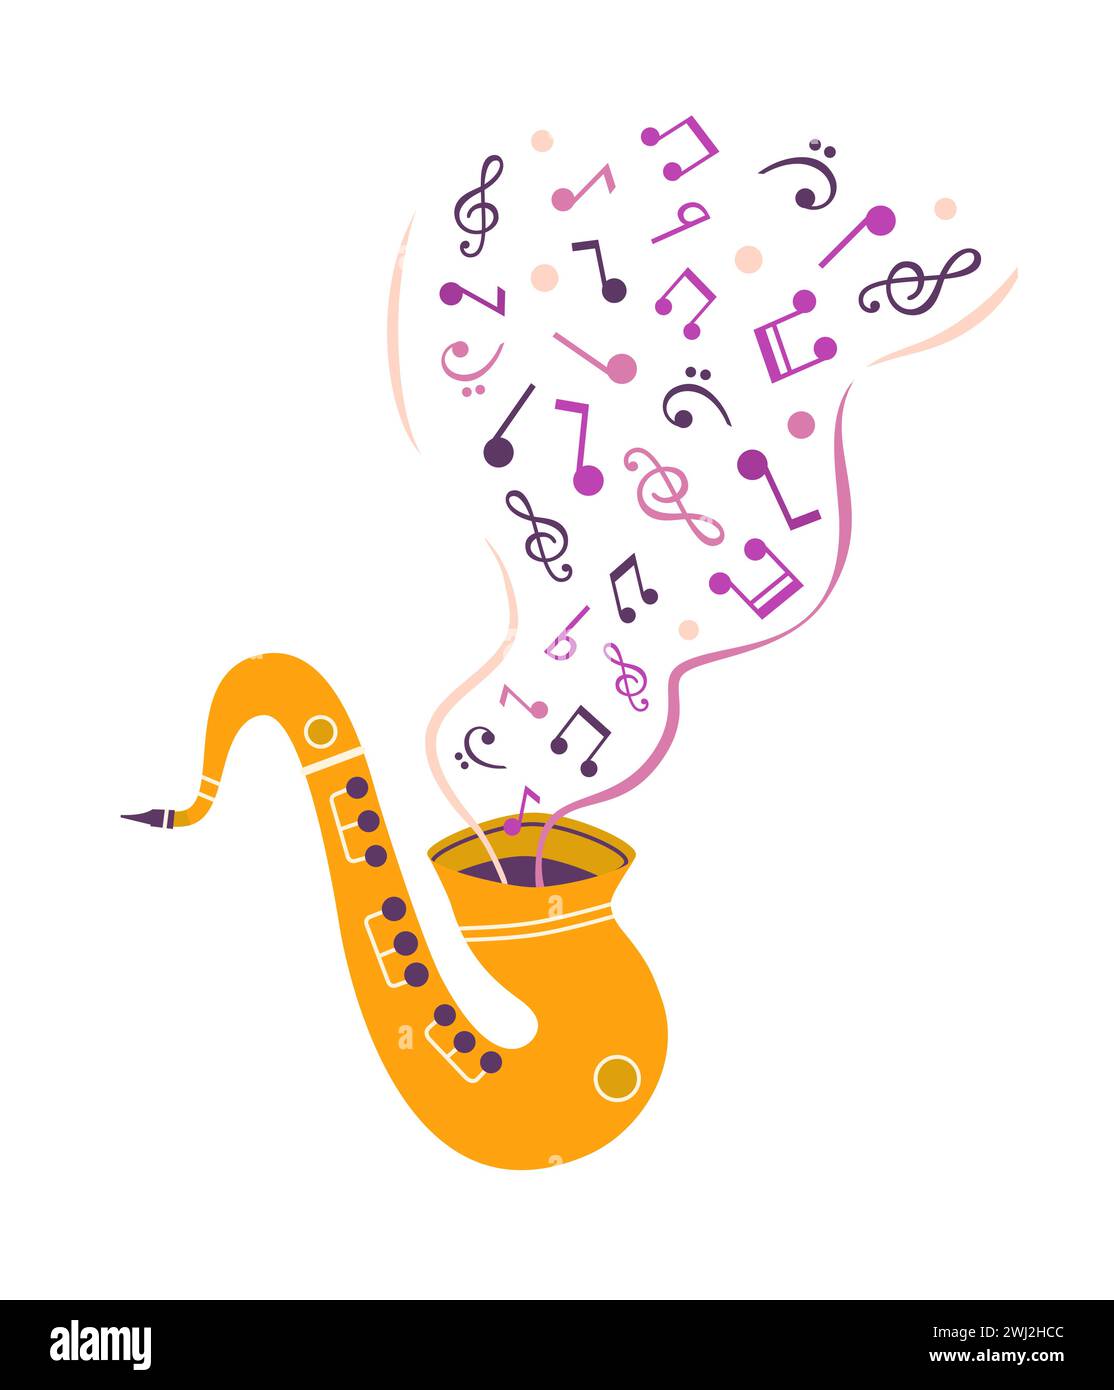 Saxophone Live Music icône vectorielle dessinée à la main mignonne. Sax éclate des notes musicales élément minimal de conception de dessin animé. Festival de musique illustration joyeuse. Jazz Illustration de Vecteur